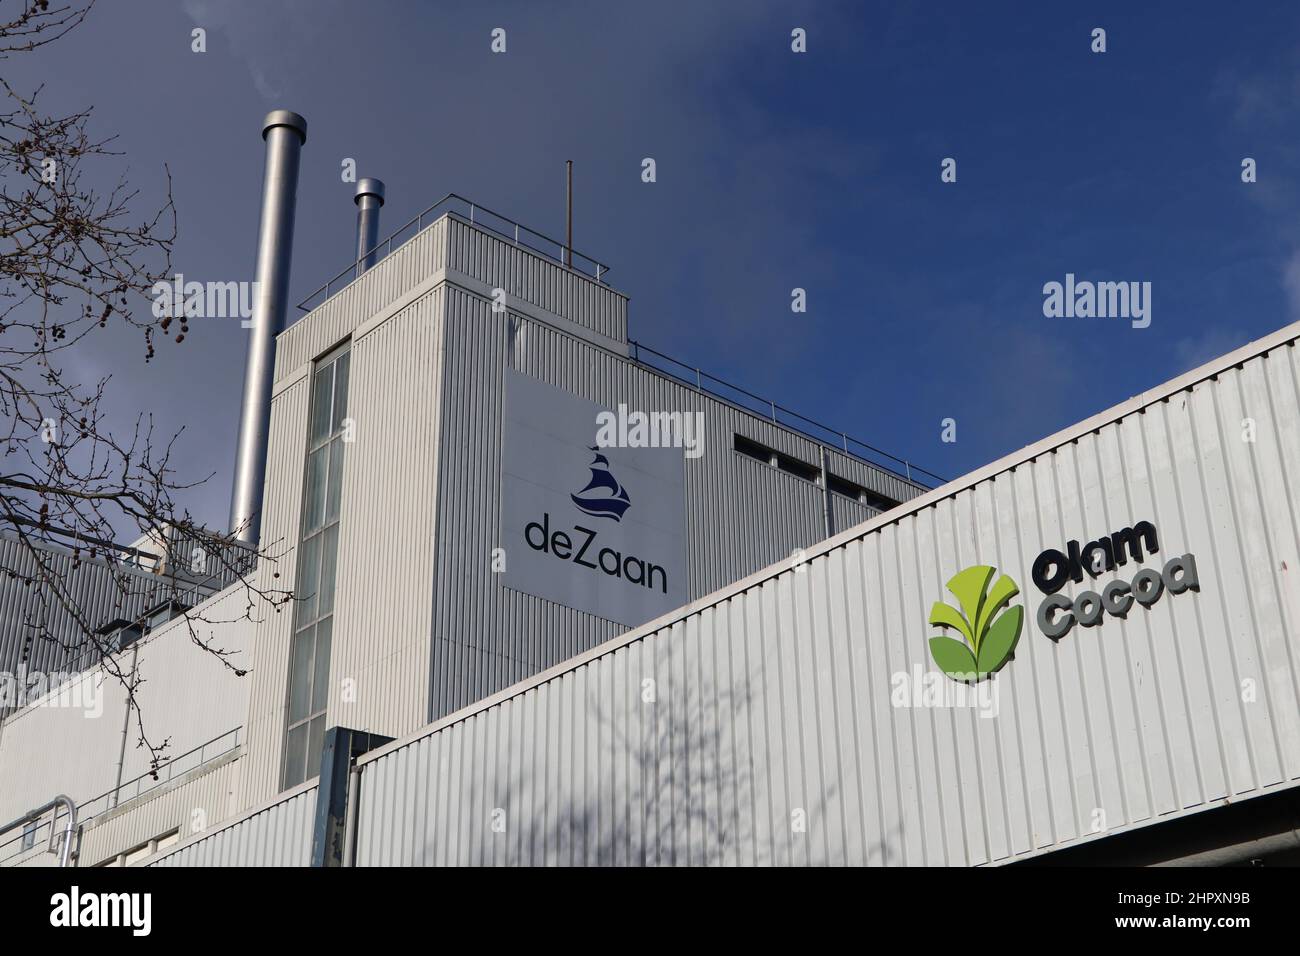 Olam Kakaofabrik in Koog aan de Zaan, Niederlande, Februar 2022  Stockfotografie - Alamy